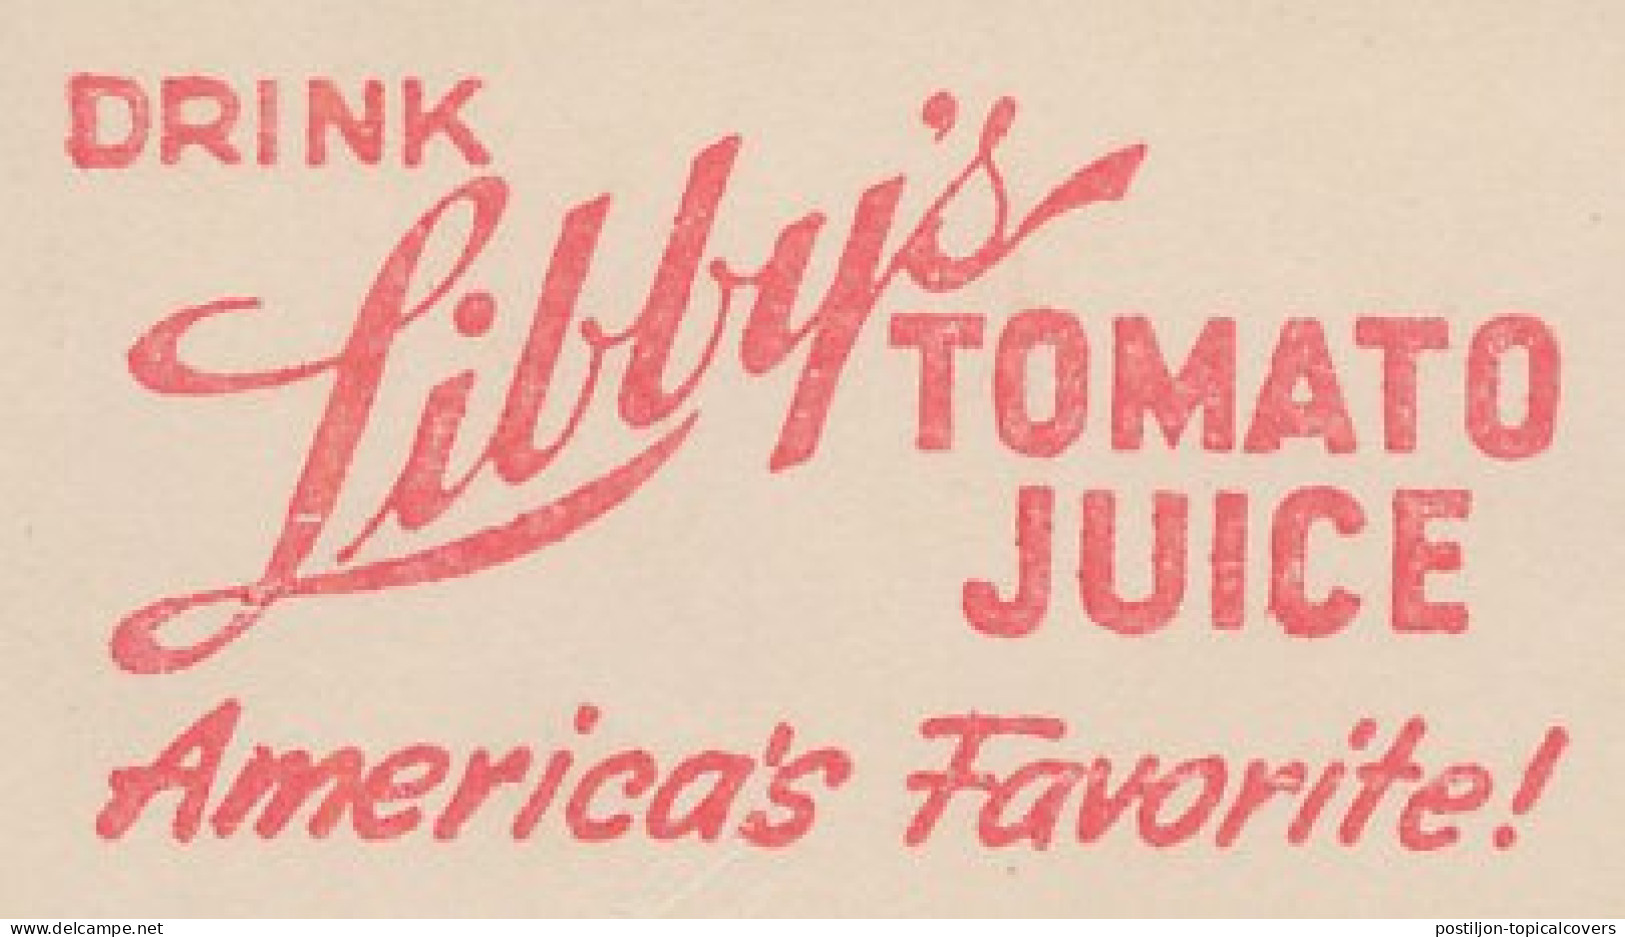 Meter Cut USA 1947 Tomato Juice - Gemüse